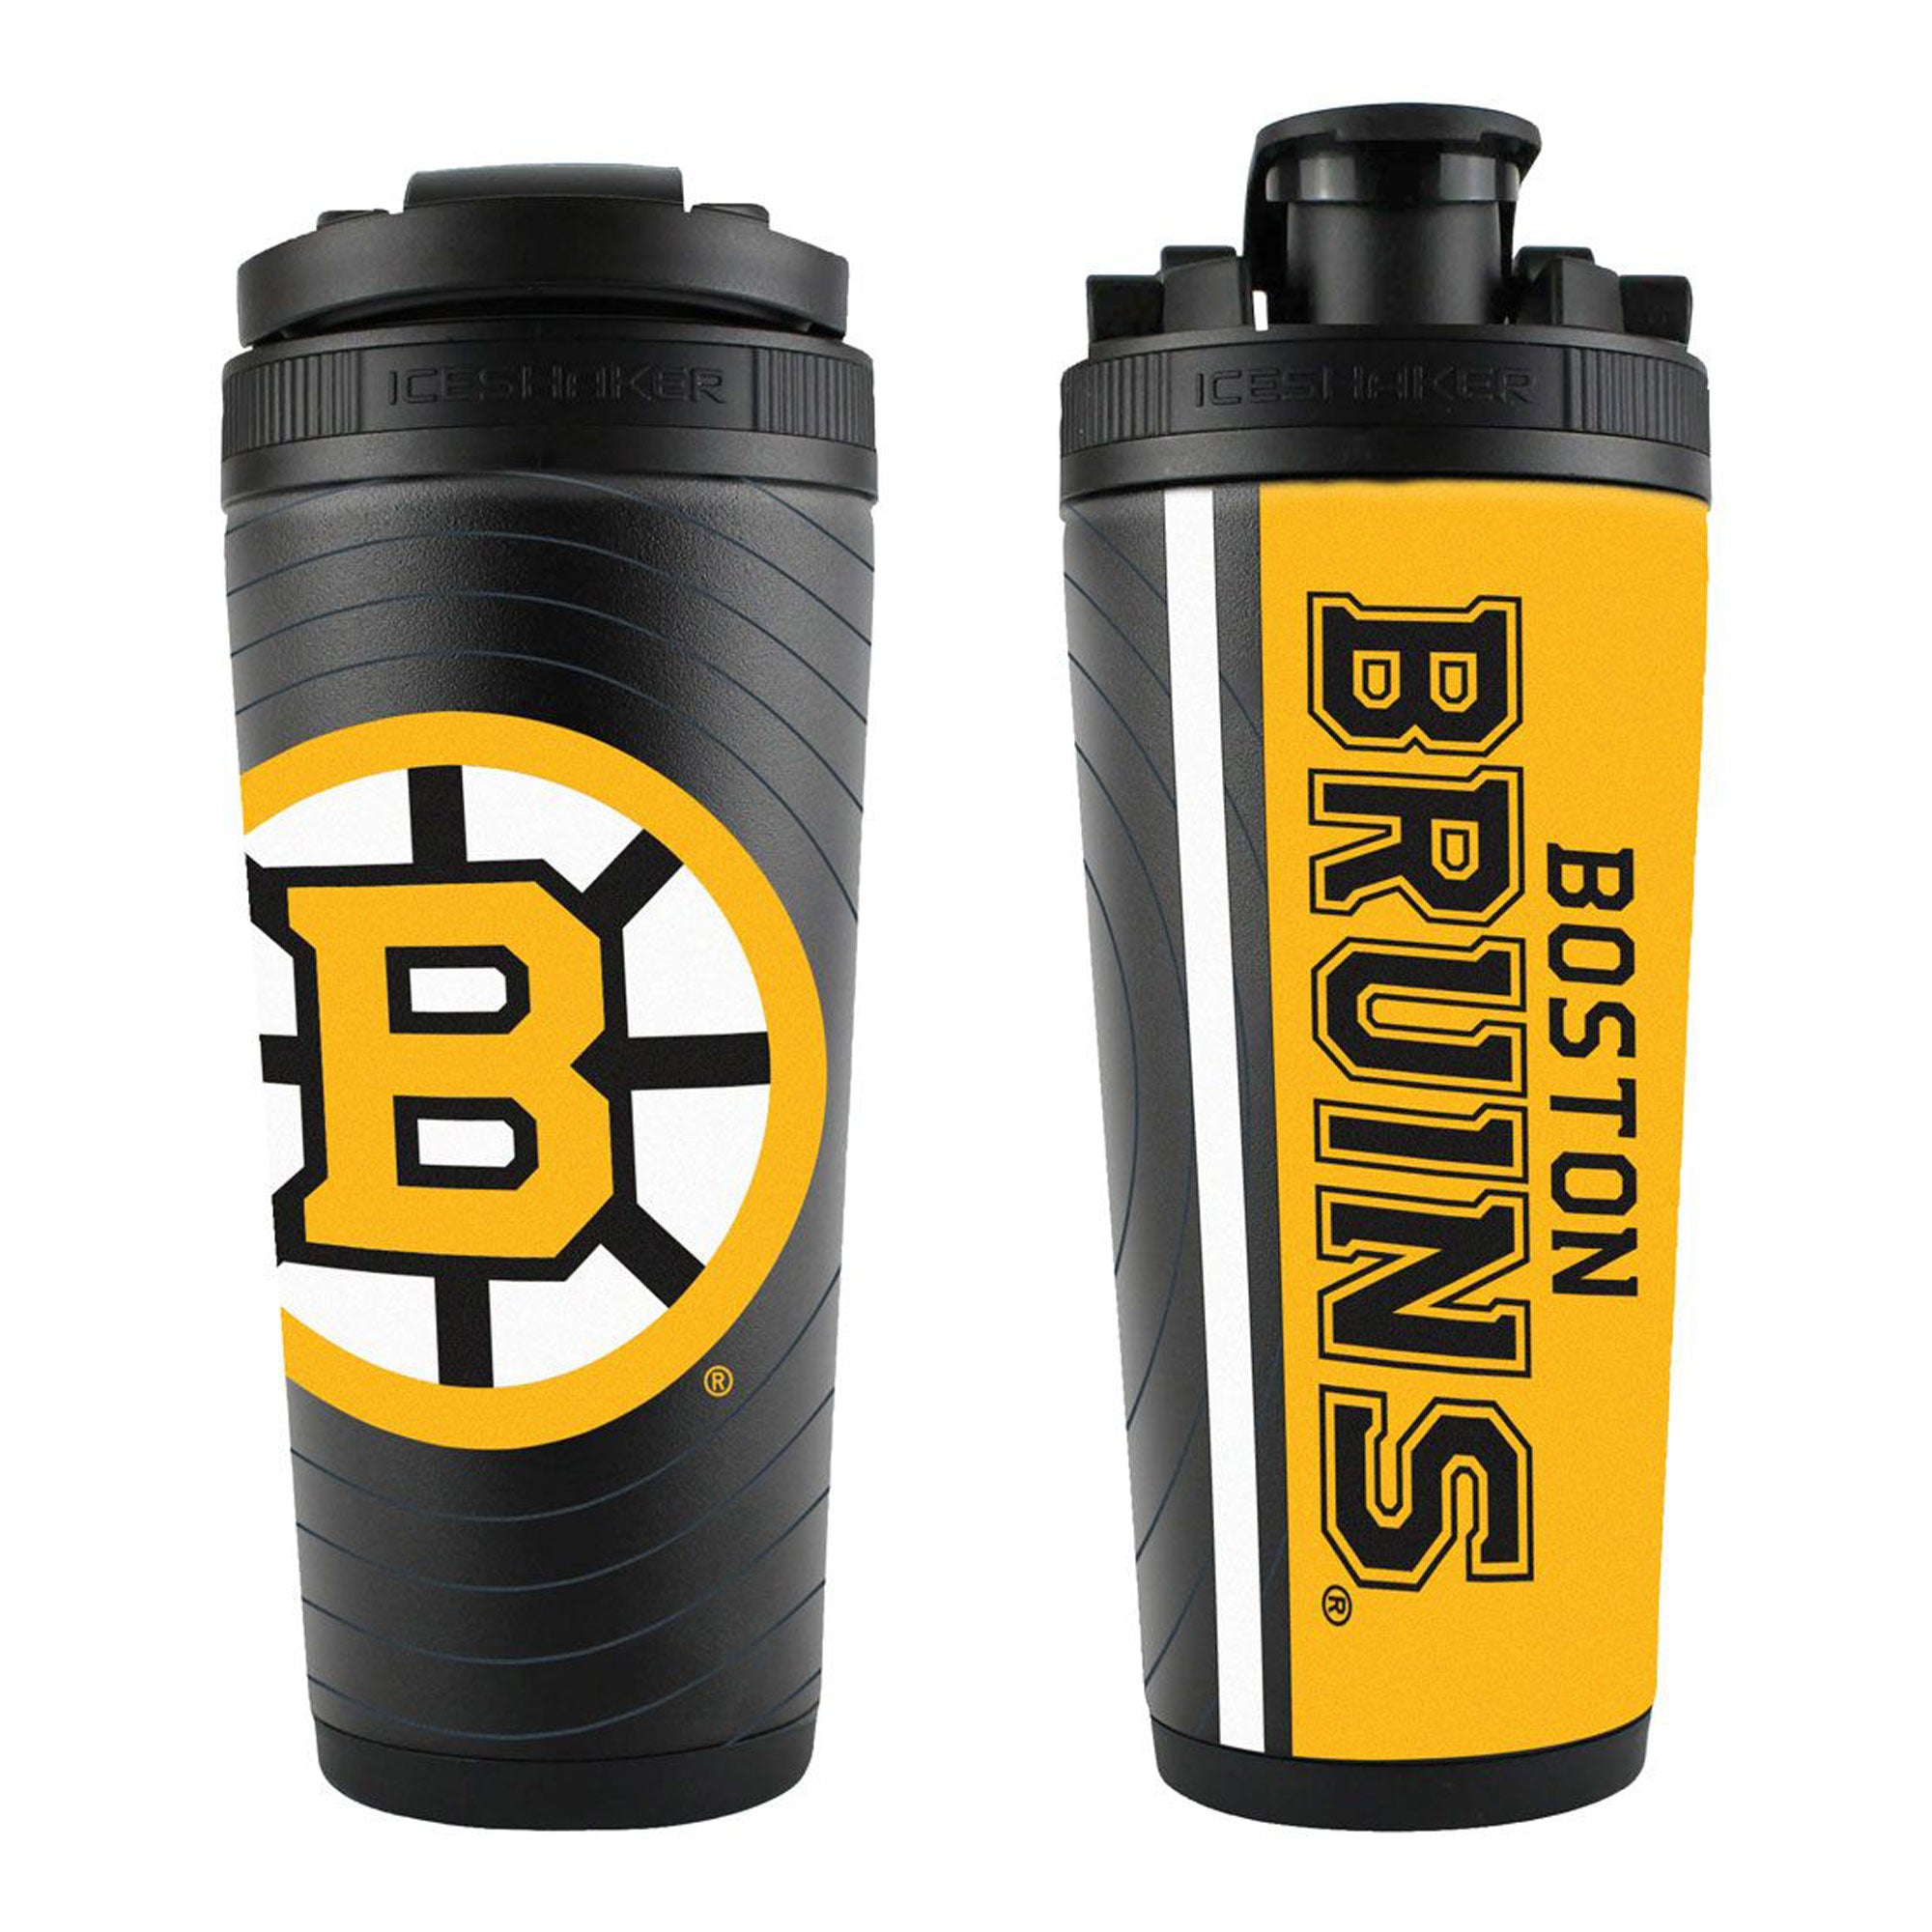 Officially Licensed Boston Bruins Sonar 4D Ice Shaker